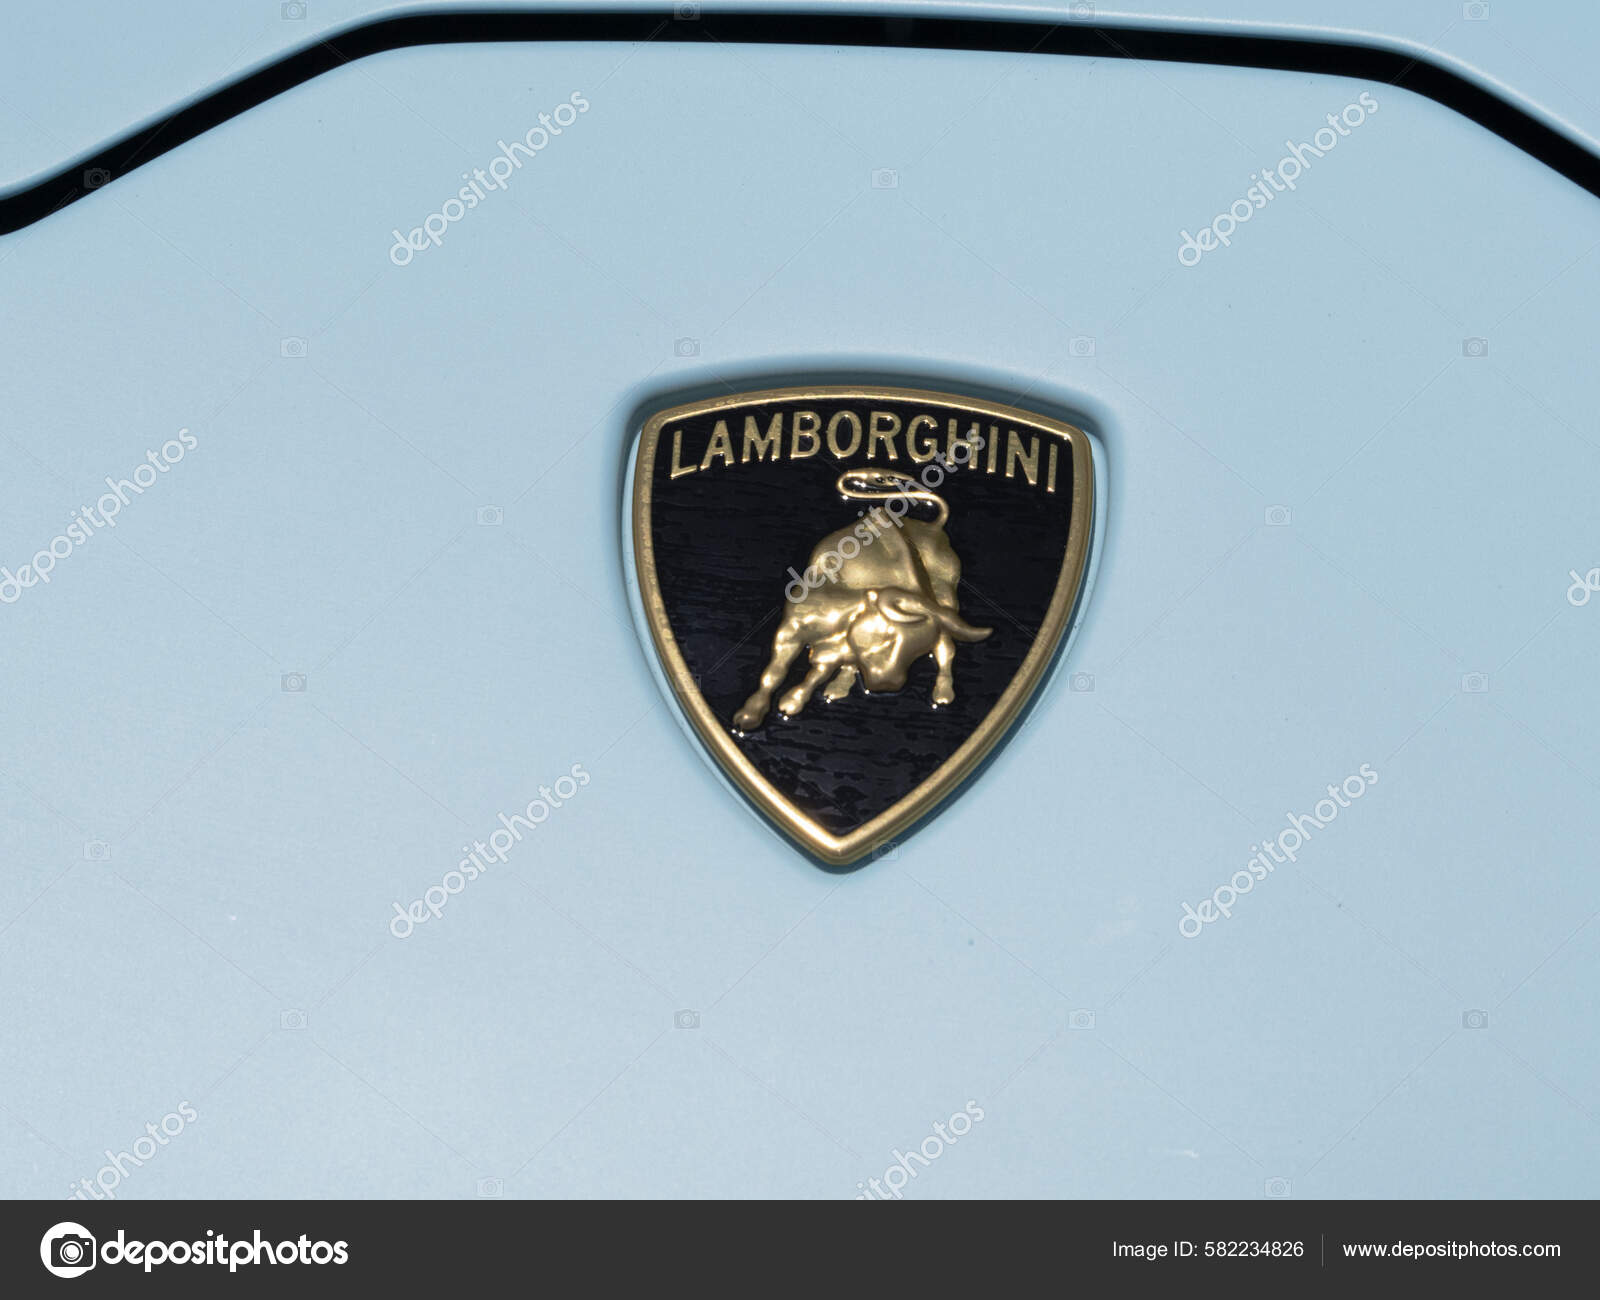 Lamborghini logo stok fotoğraflar | Lamborghini logo telifsiz resimler,  görseller | Depositphotos